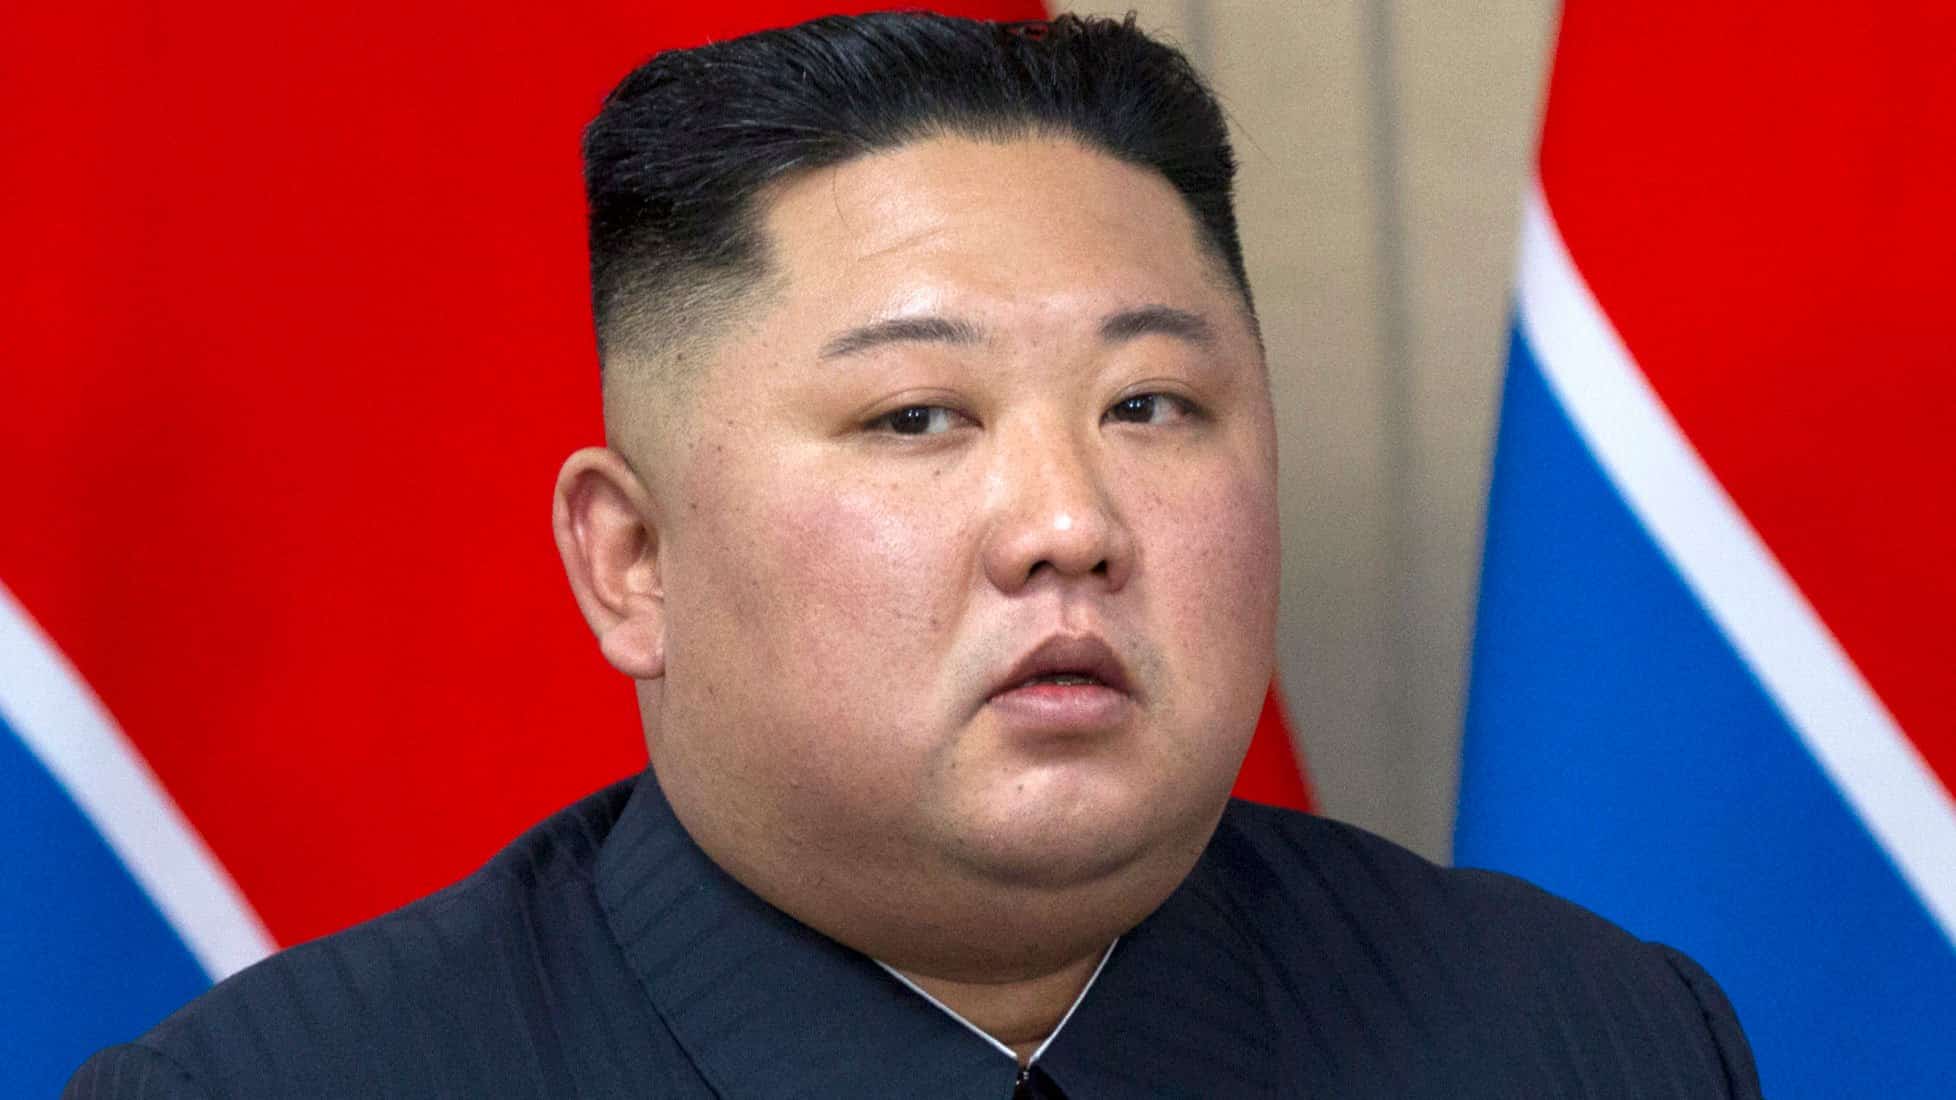 eszak-korea ballisztikus raketa del-korea